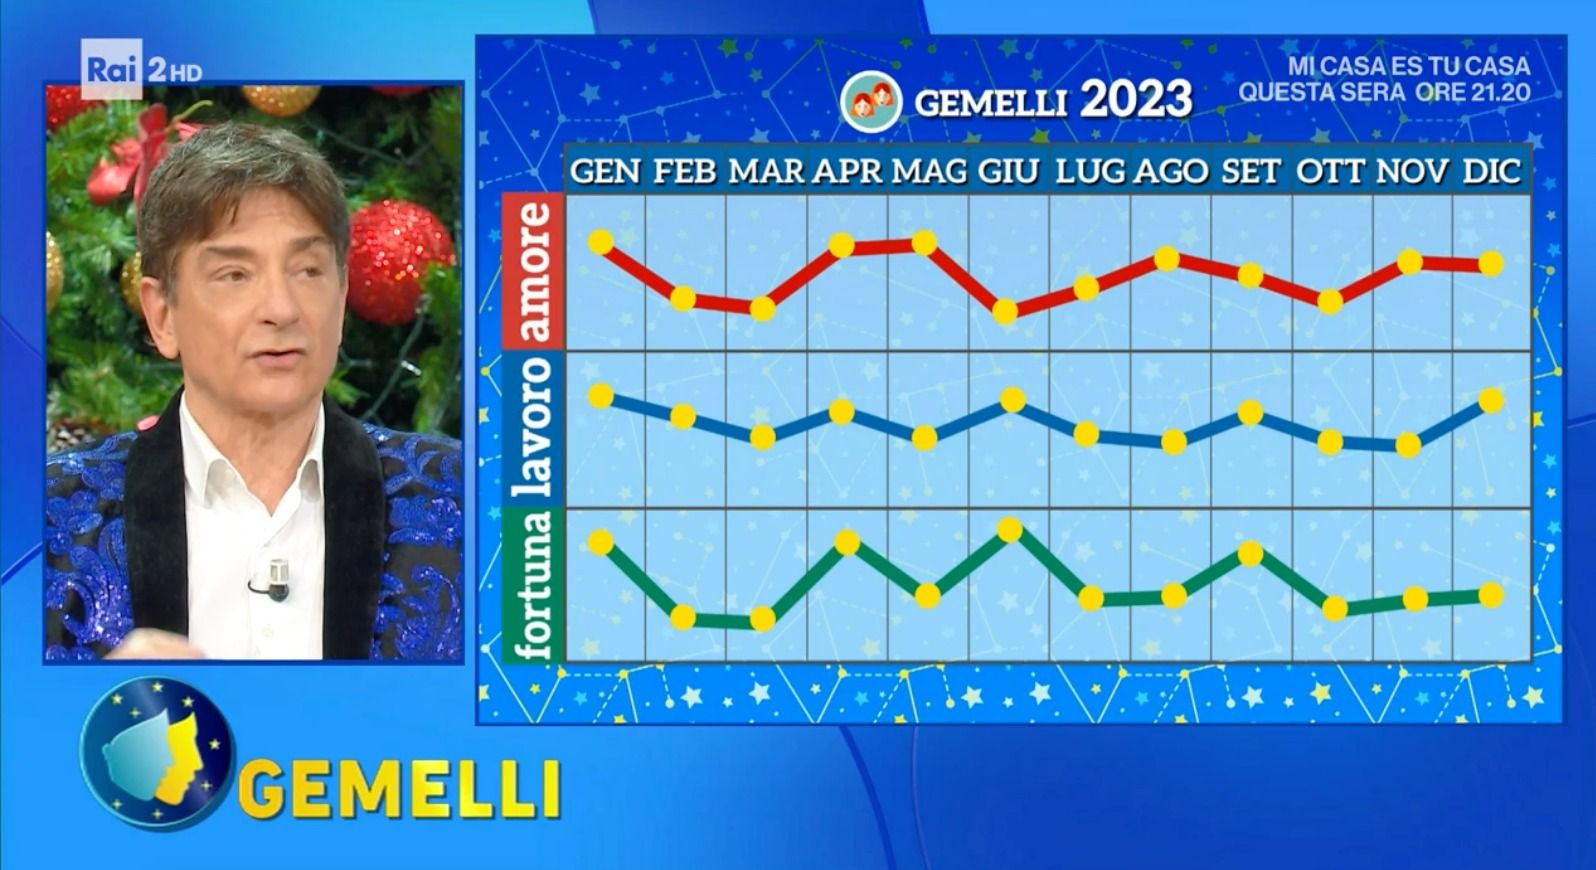 Grafico Paolo Fox Gemelli 2023 